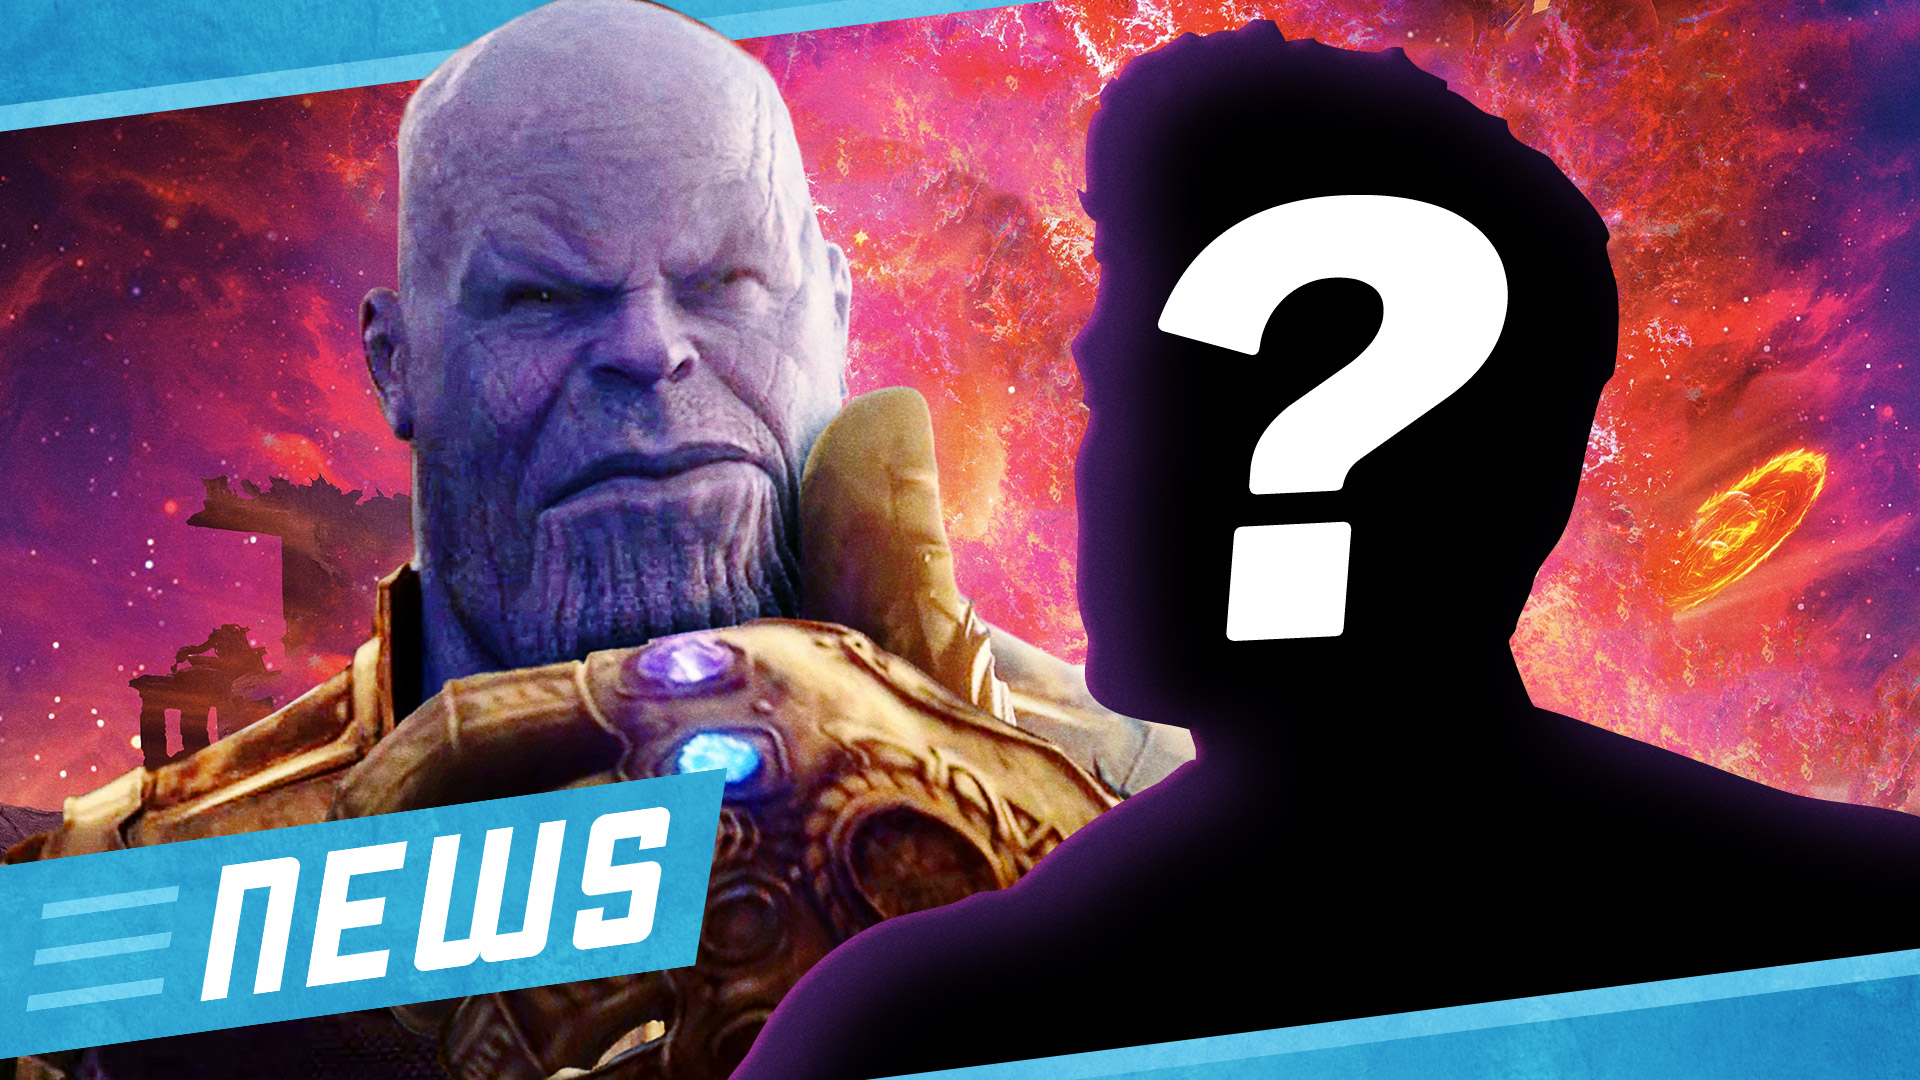 Infinity War - Warum wird ein Avenger versteckt? - FLIPPS News vom 15.04.2018